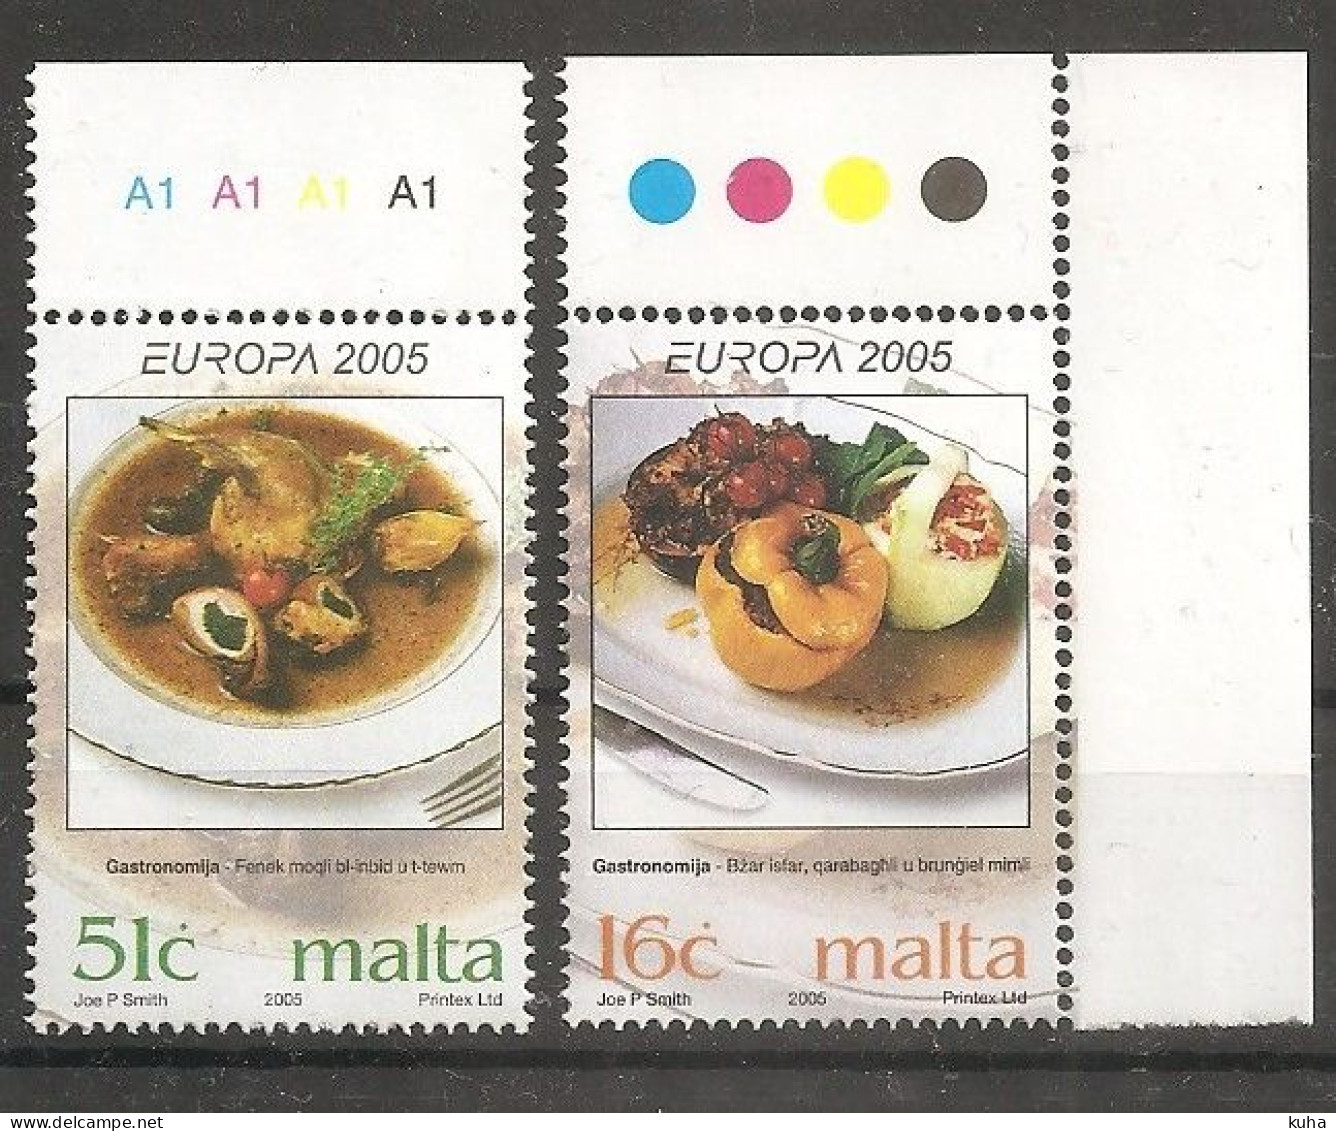 Malta Food  Europe MNH - Food